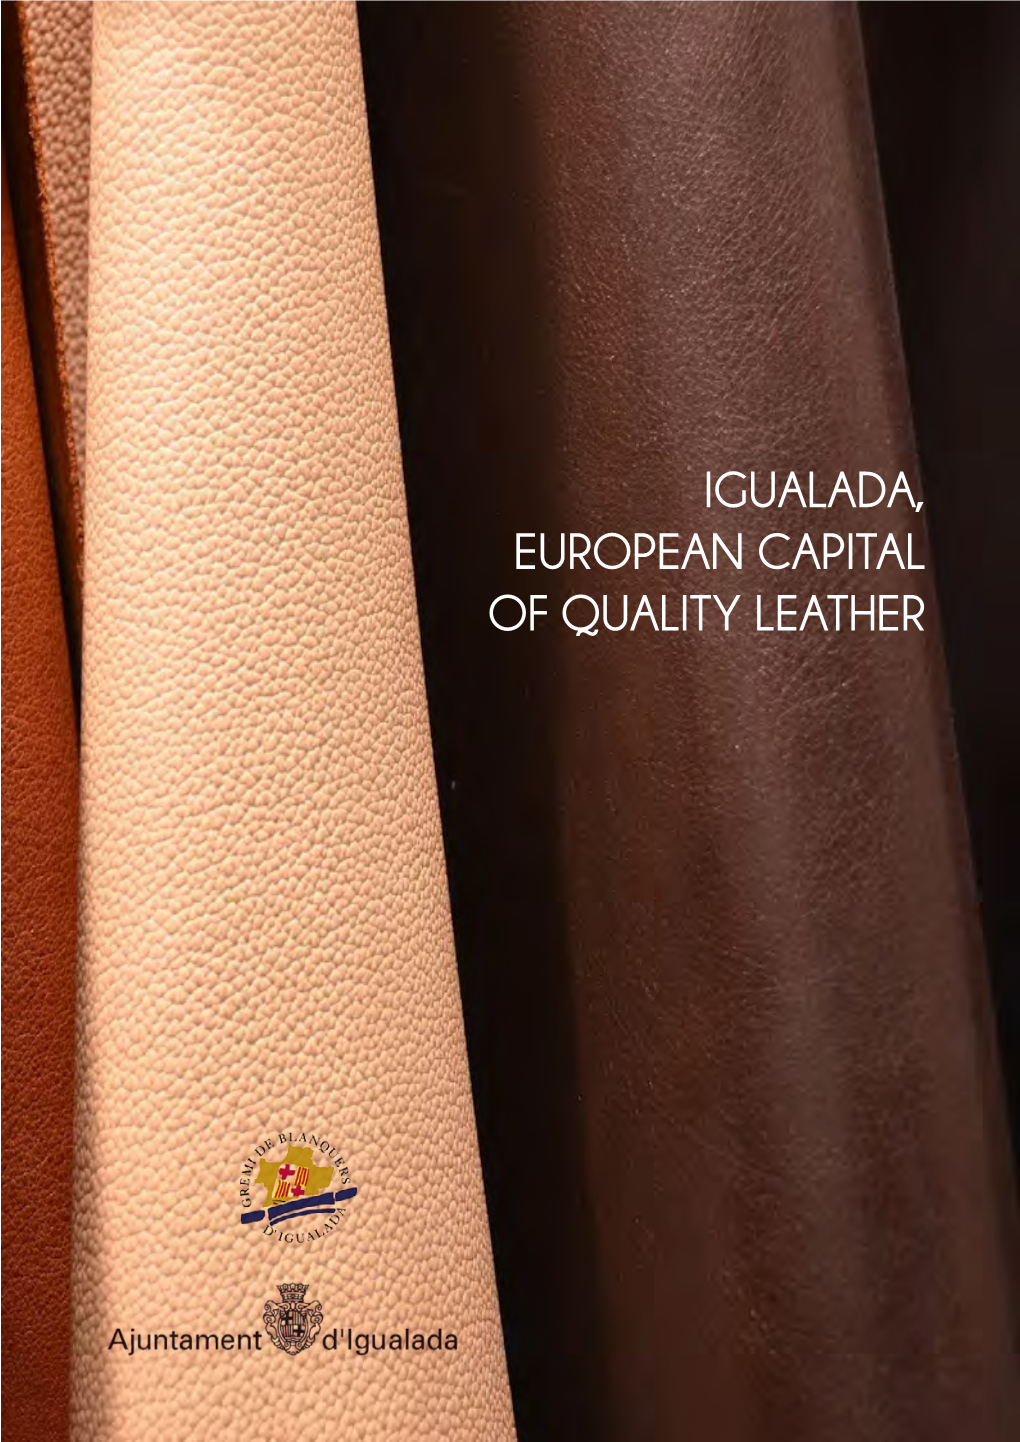 Igualada, European Capital of Quality Leather Igualada, European Capital of Quality Leather